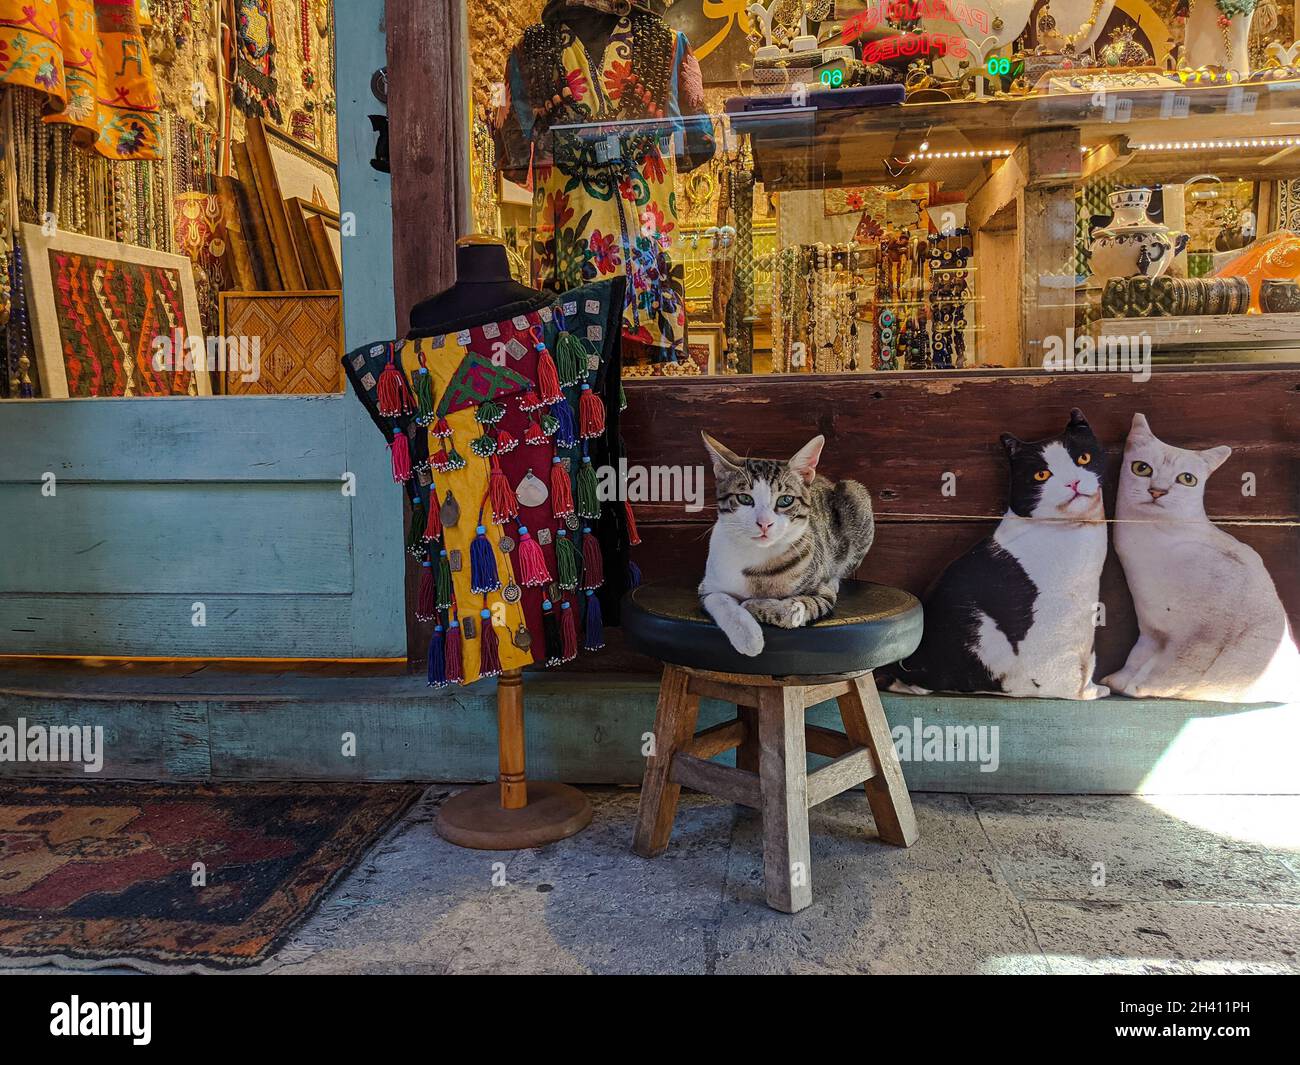 ESTAMBUL, TURQUÍA - 9 DE AGOSTO de 2021: Gato callejero parado en una silla de época en la de una tienda de ropa y accesorios de joyería en el Gran Bazaa